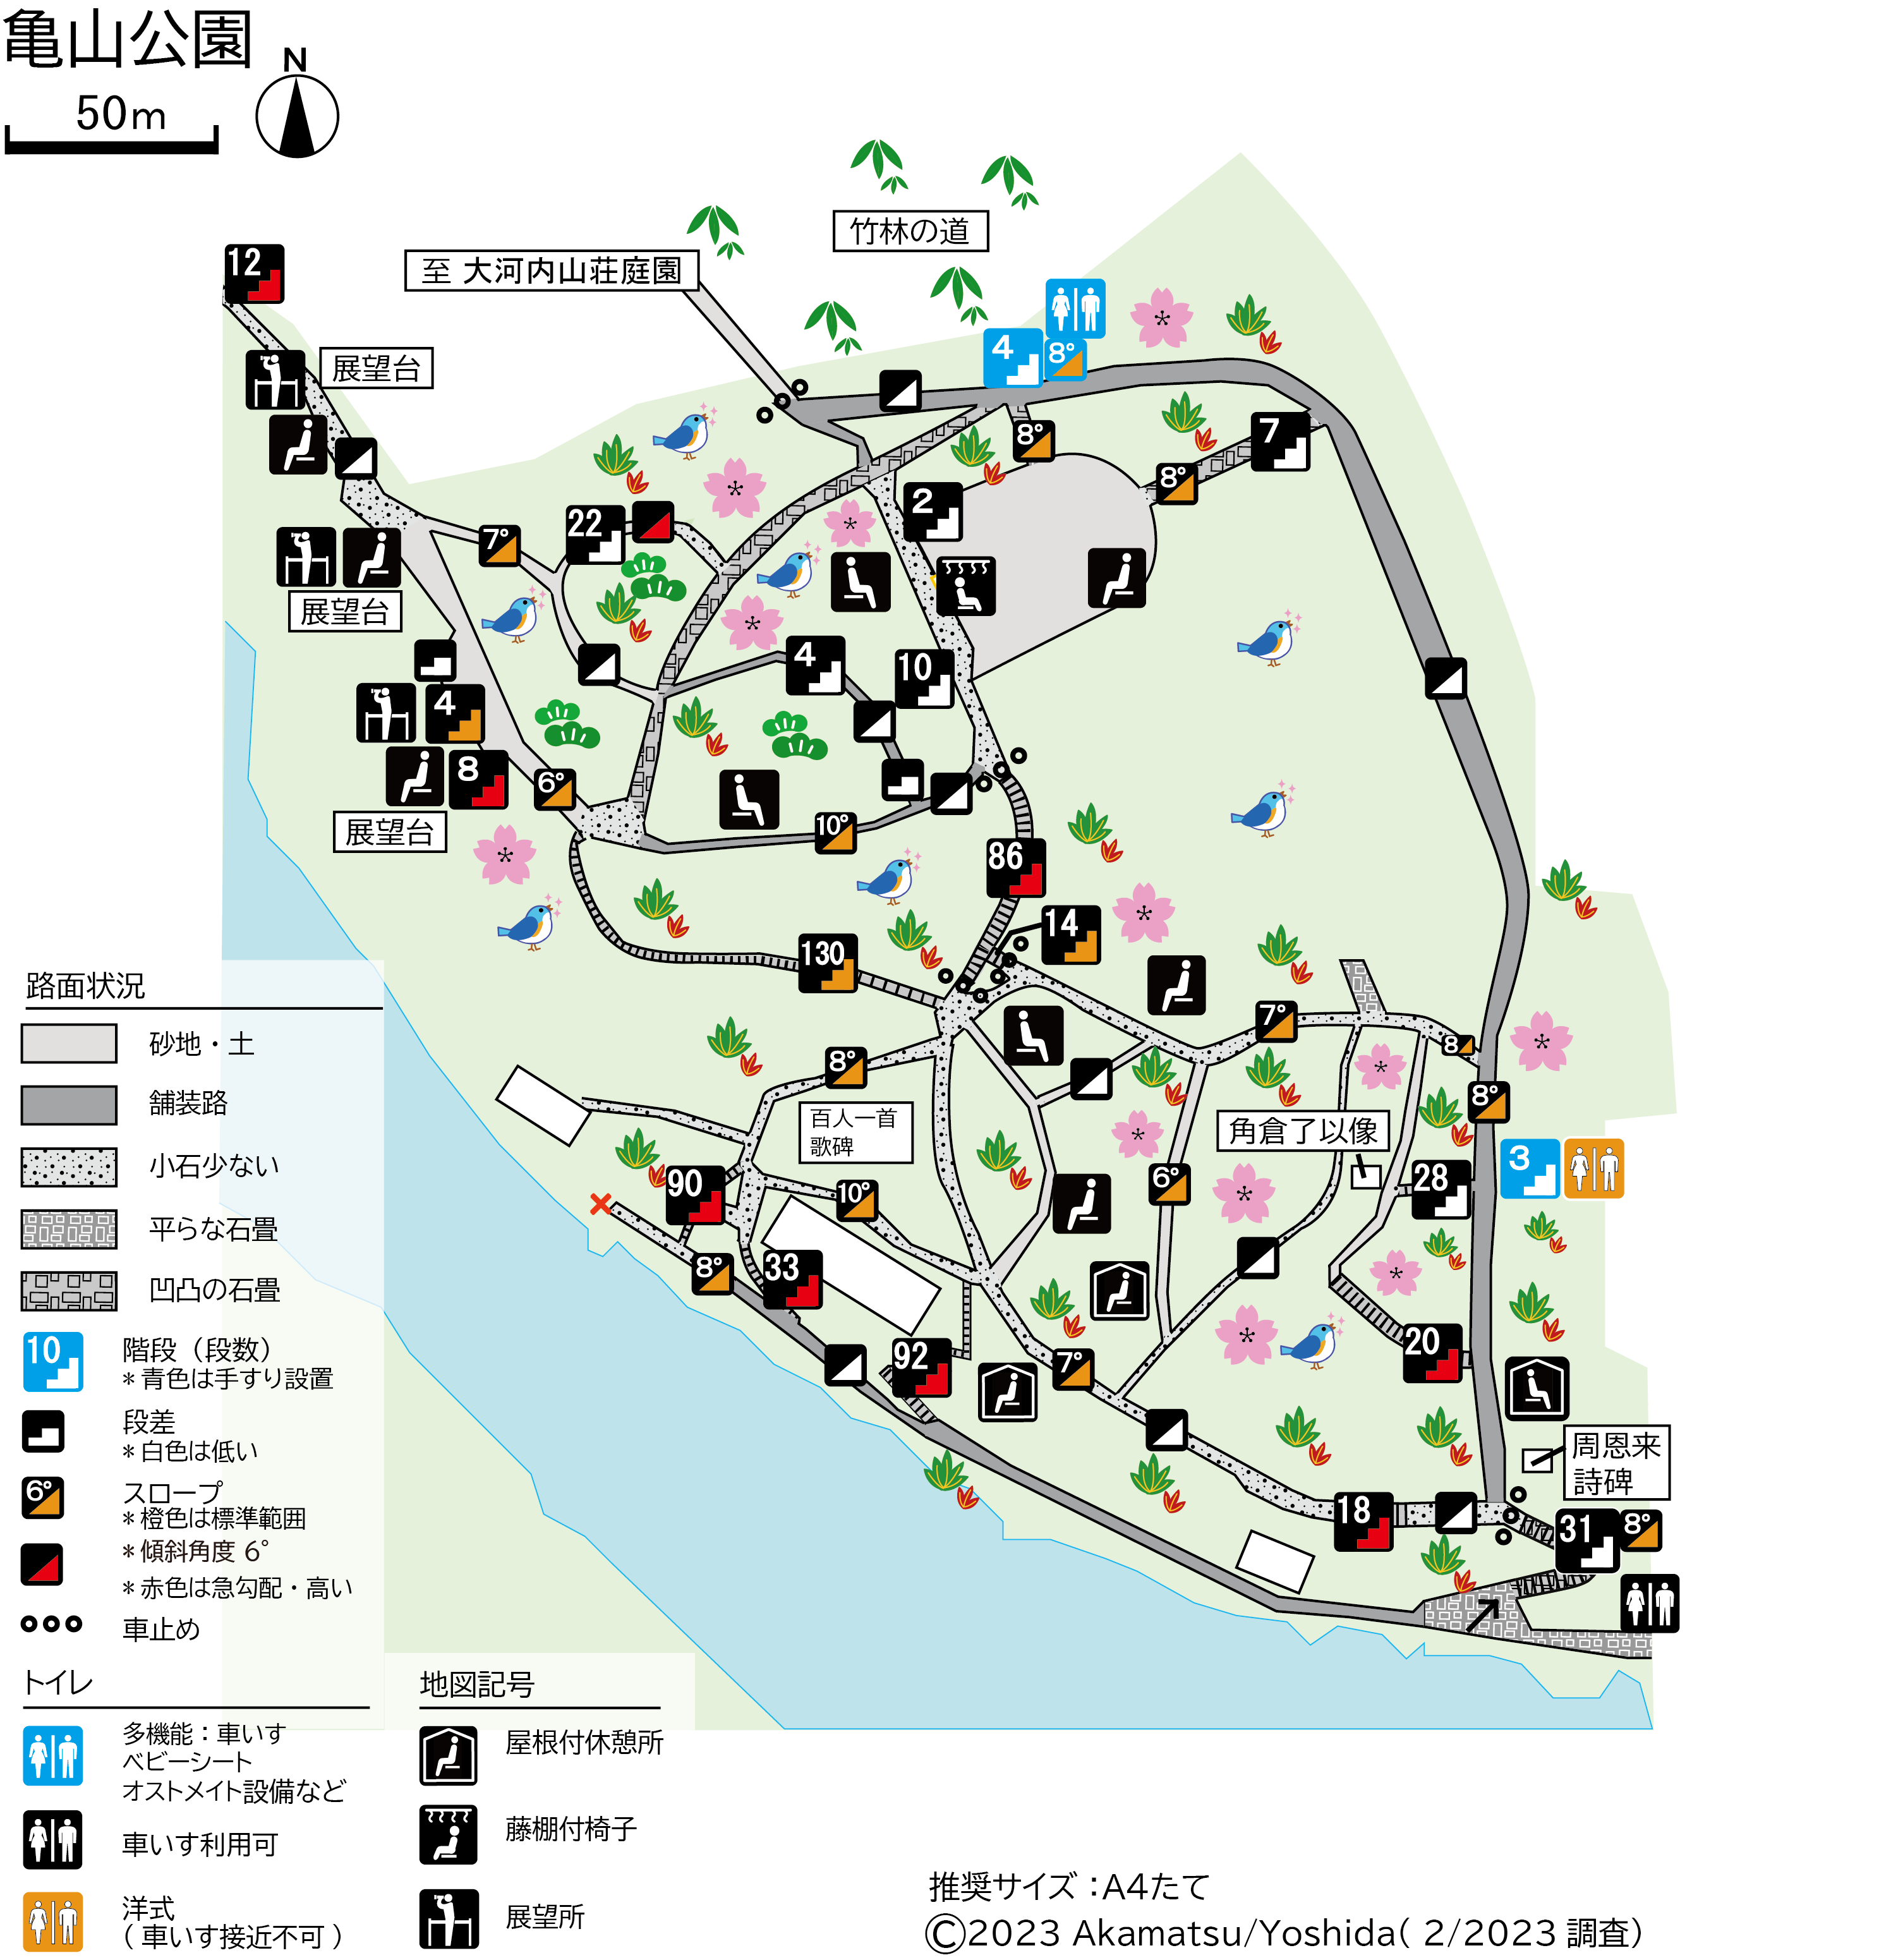 亀山公園基本地図new20231103.png